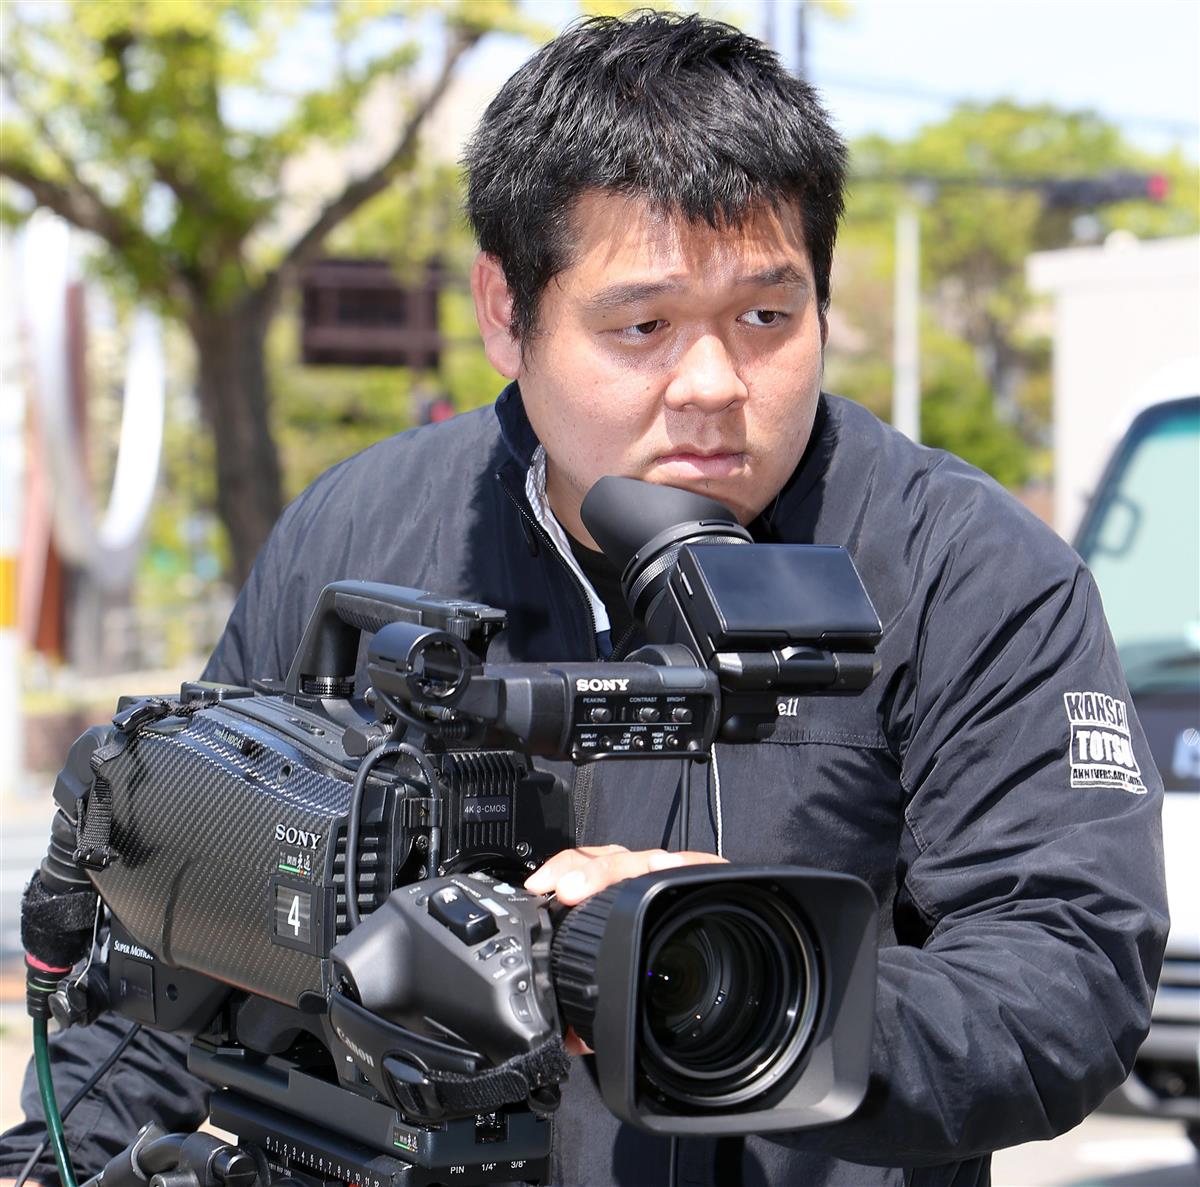 歴史に残る瞬間撮りたい テレビカメラマンの金野さん 産経ニュース